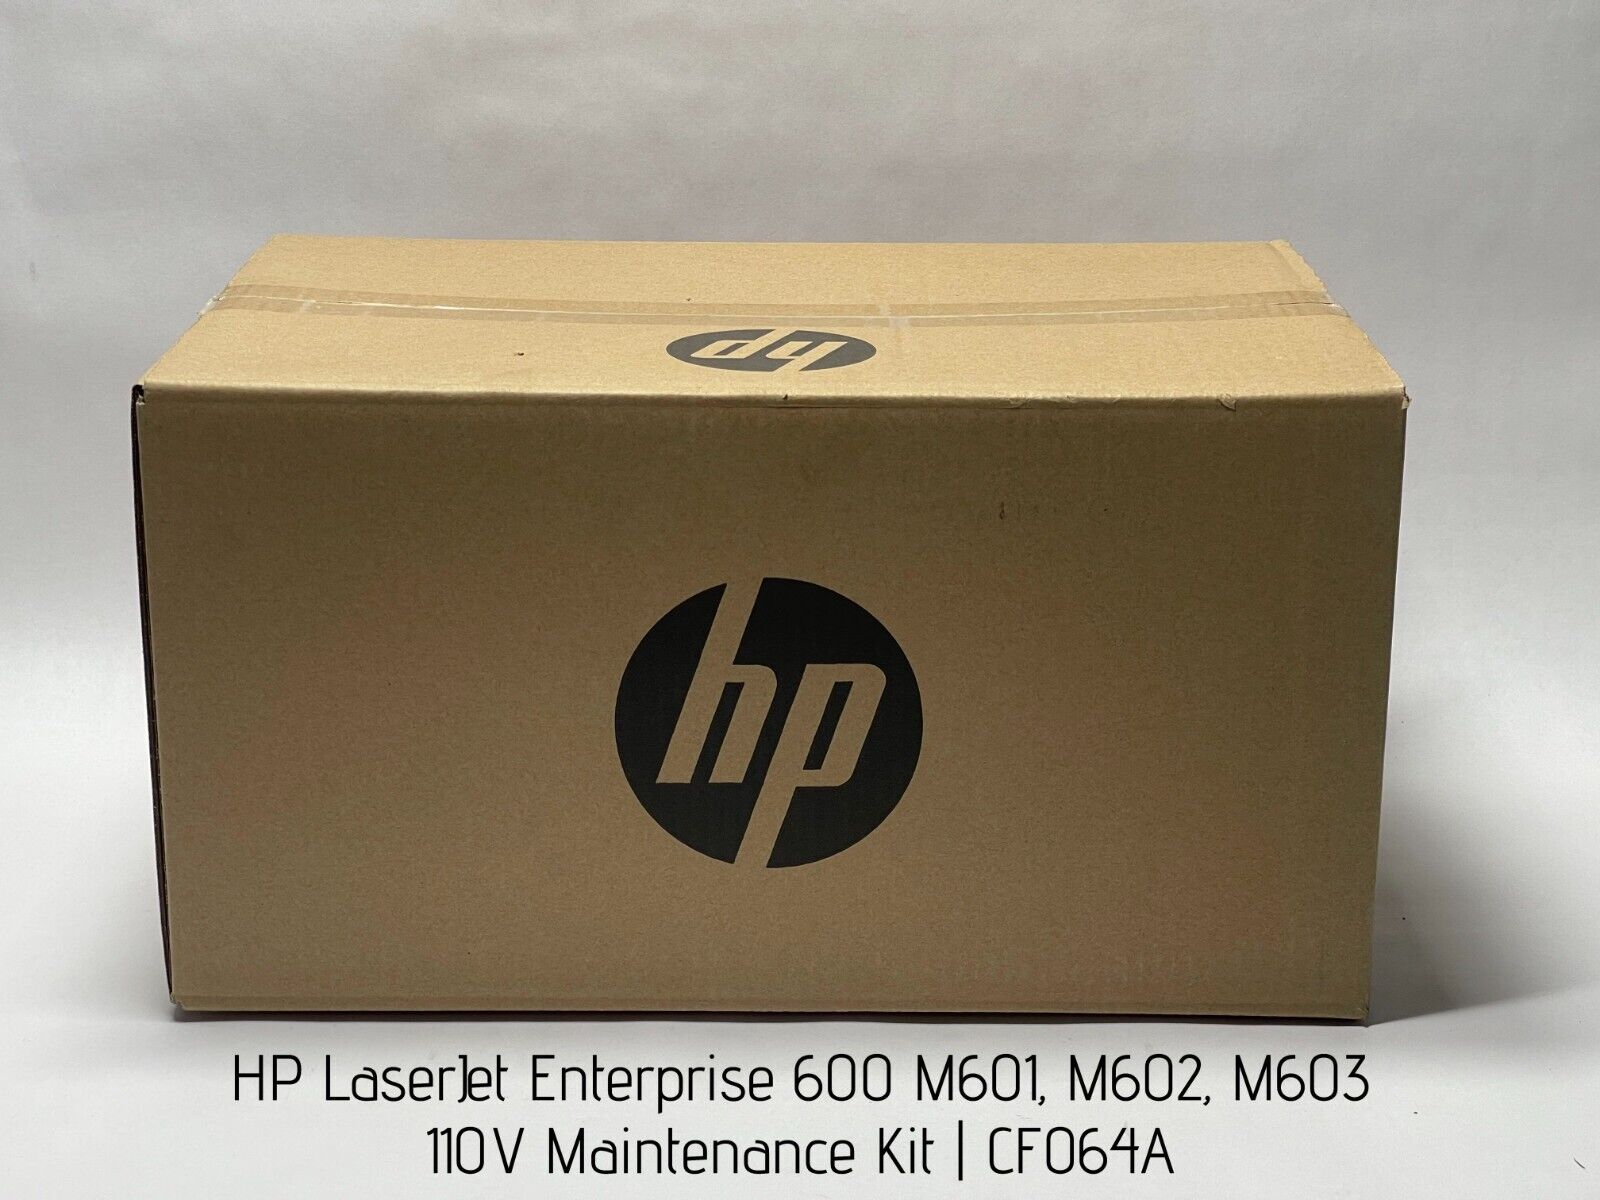 HP LaserJet Enterprise 600 M601, M602, M603 110V Maintenance Kit, CF064A